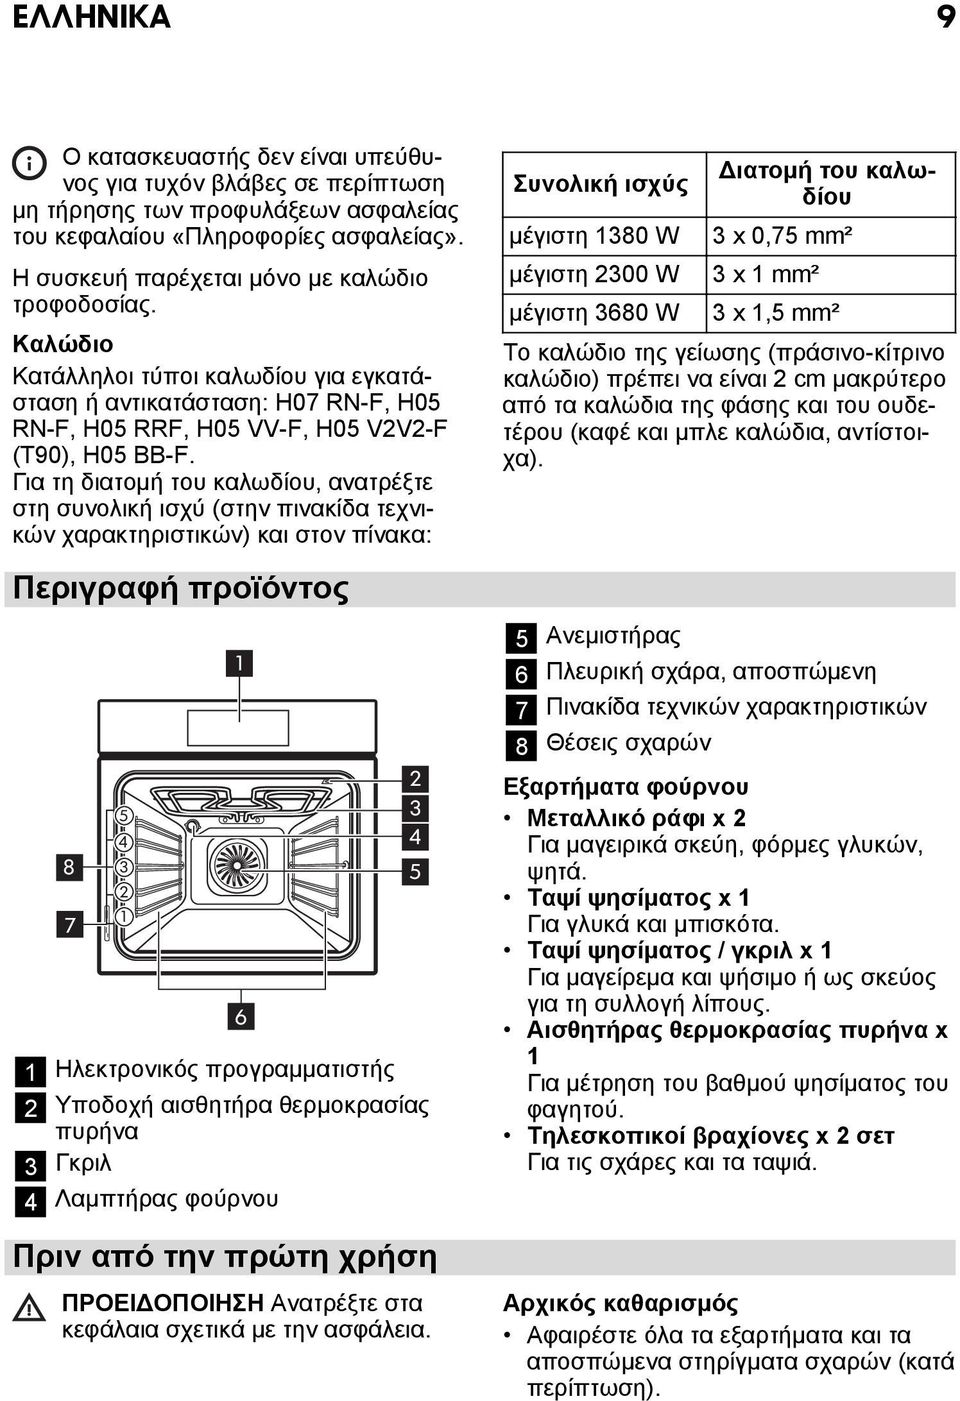 Για τη διατομή του καλωδίου, ανατρέξτε στη συνολική ισχύ (στην πινακίδα τεχνικών χαρακτηριστικών) και στον πίνακα: Περιγραφή προϊόντος 2 5 3 4 4 8 3 5 2 7 1 1 Ηλεκτρονικός προγραμματιστής 2 Υποδοχή